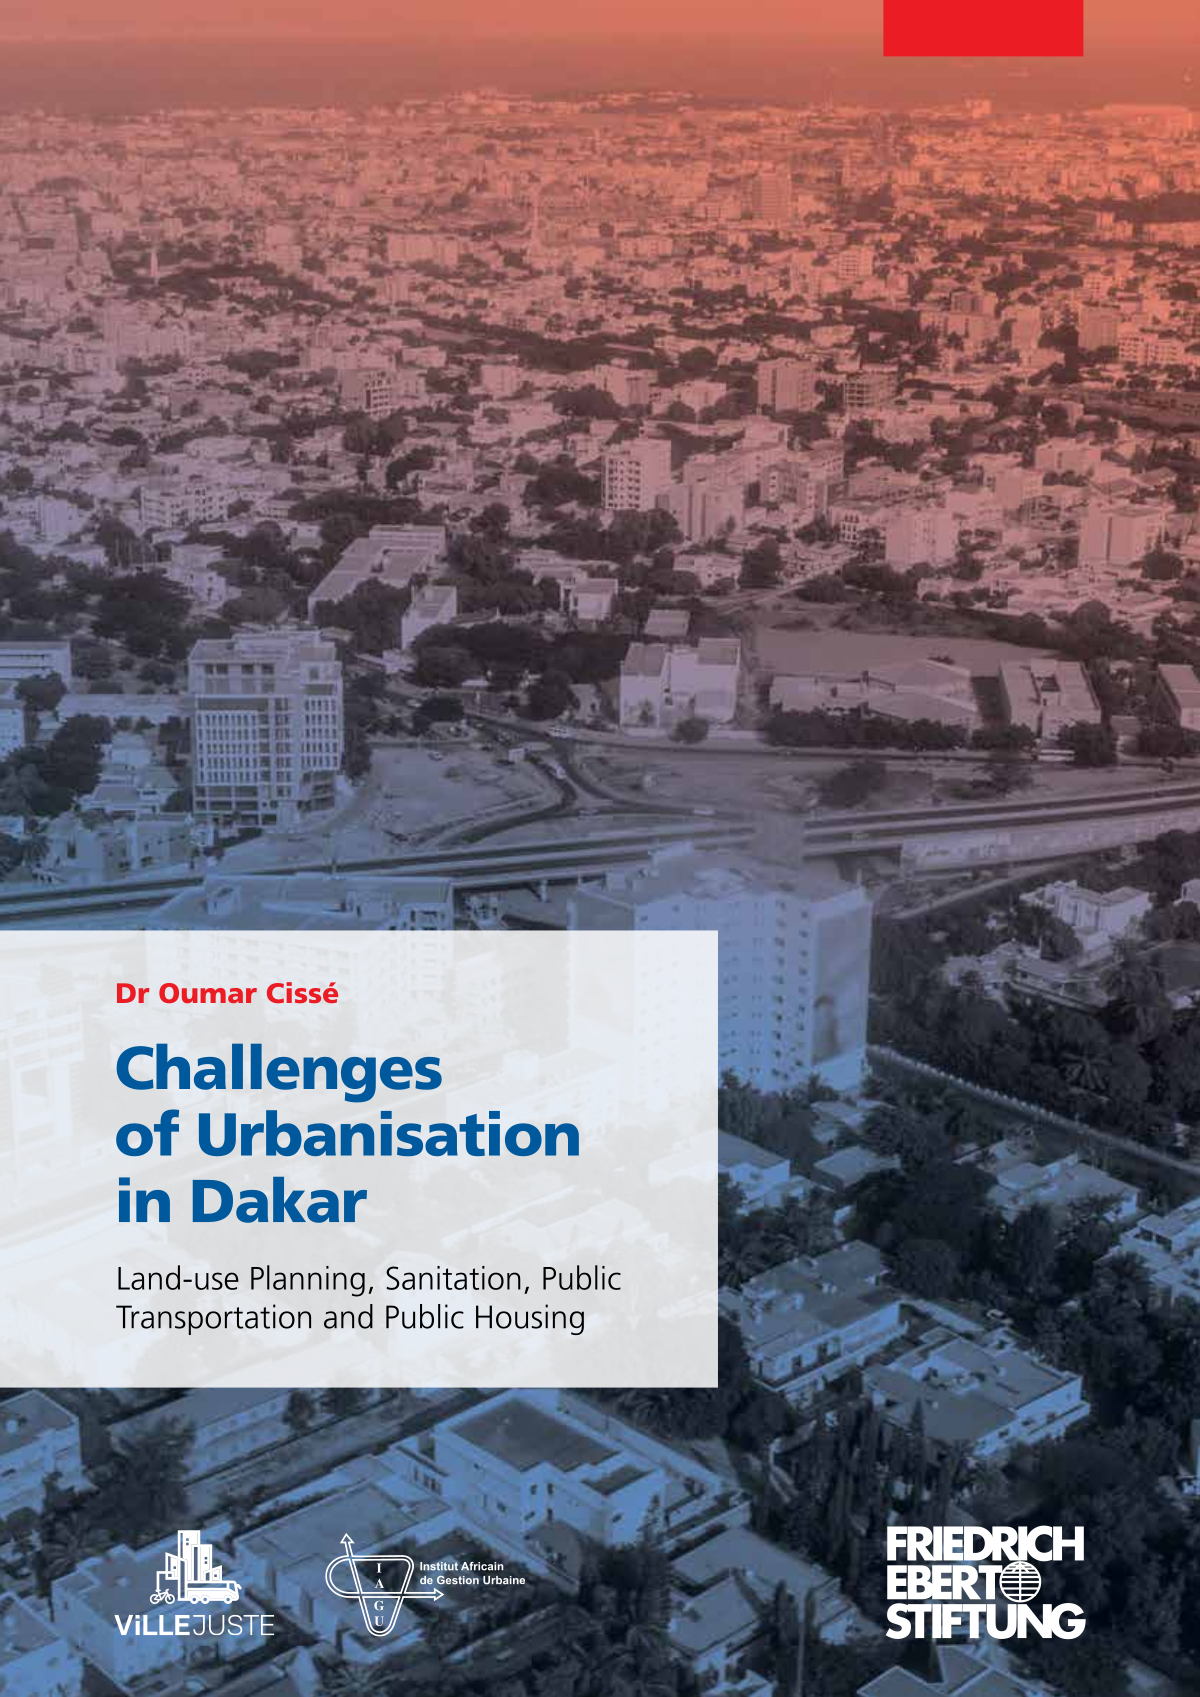 Buchcover der Publikation "Challenges of urbanisation in dhakar"